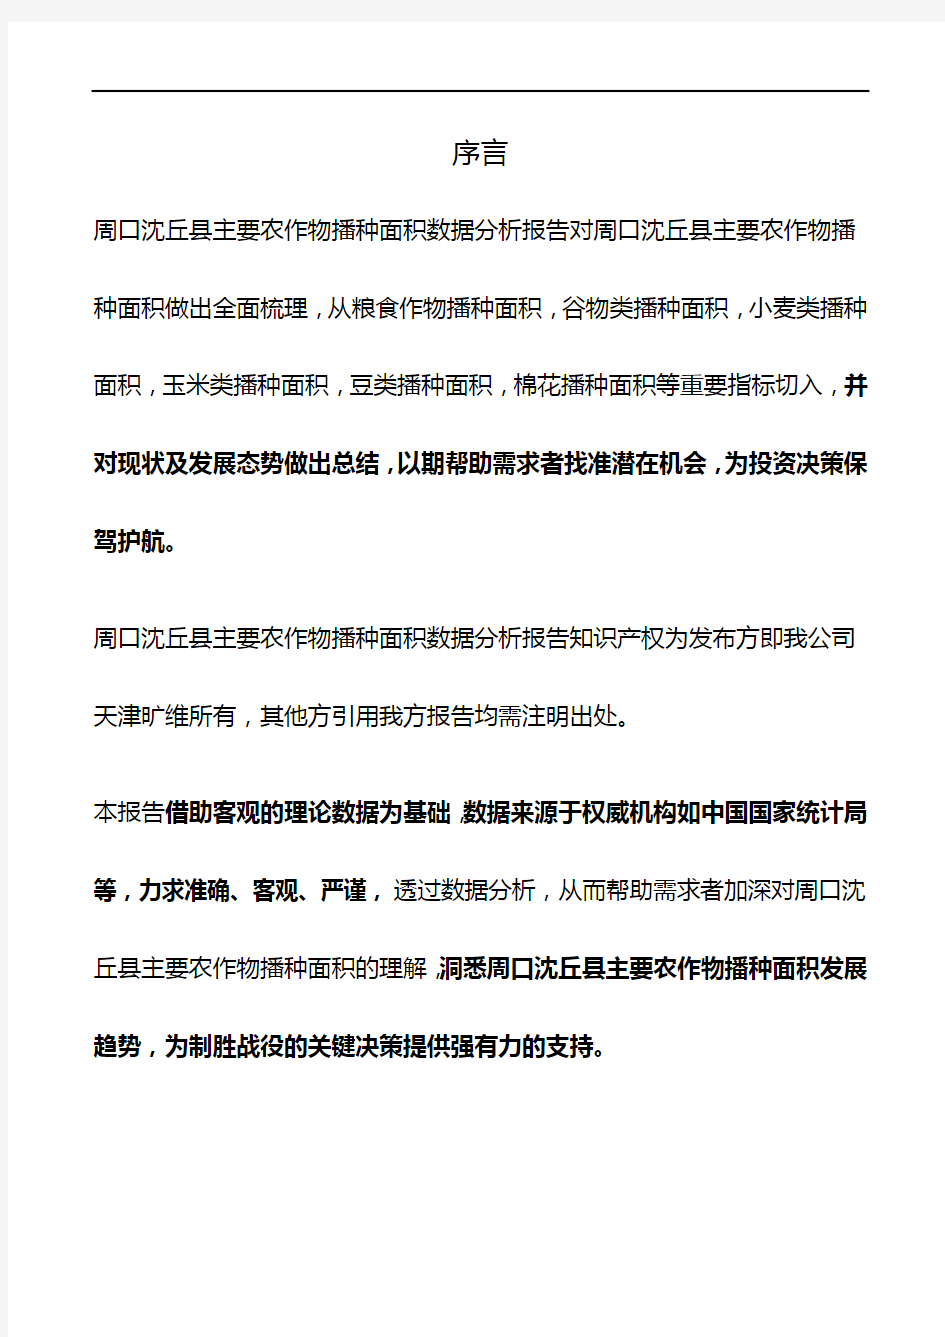 河南省周口沈丘县主要农作物播种面积数据分析报告2019版